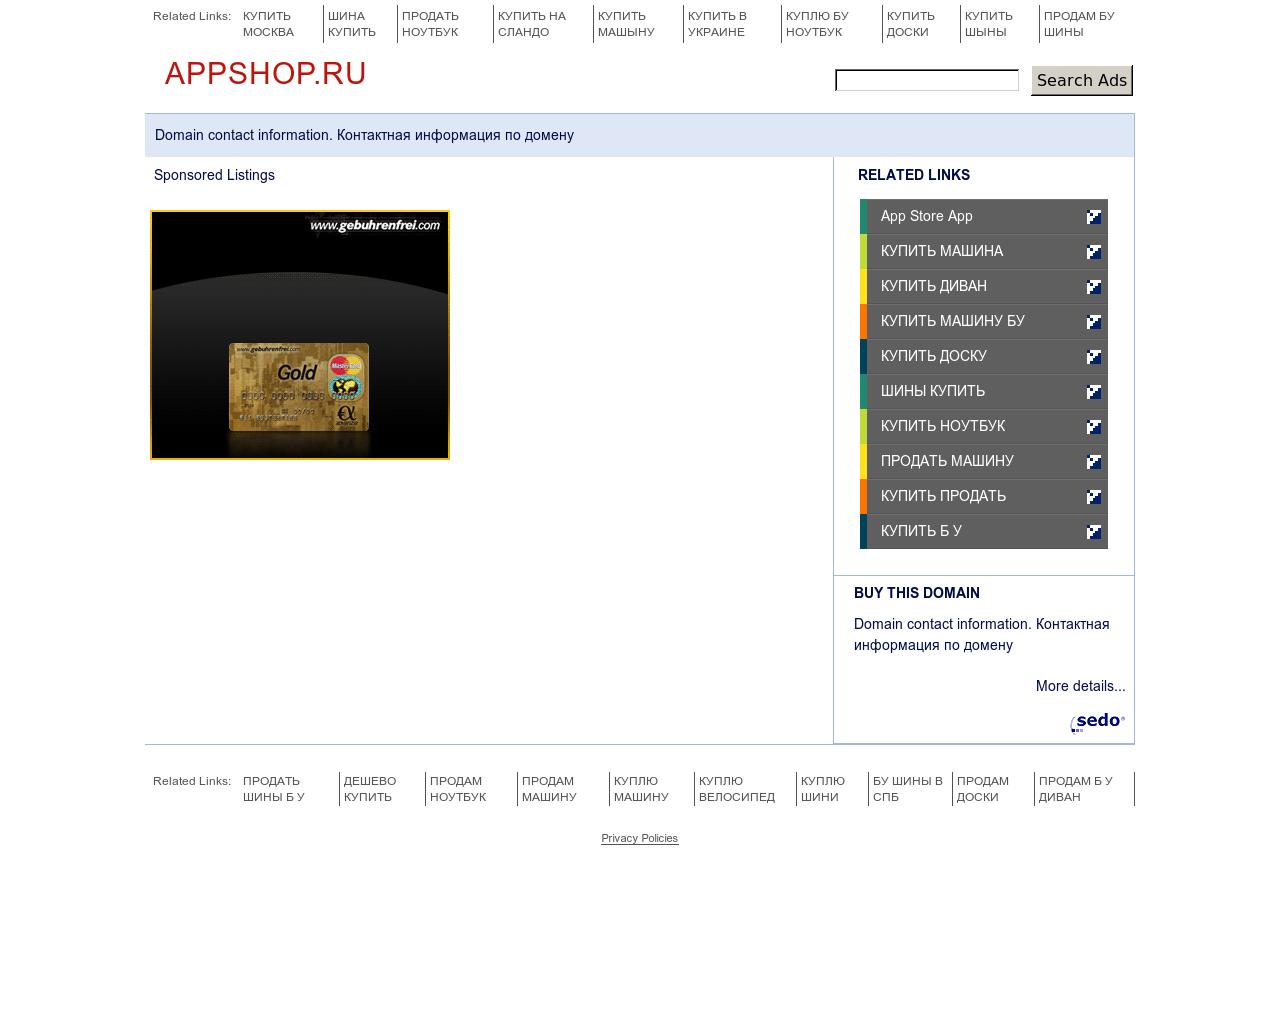 Изображение сайта appshop.ru в разрешении 1280x1024